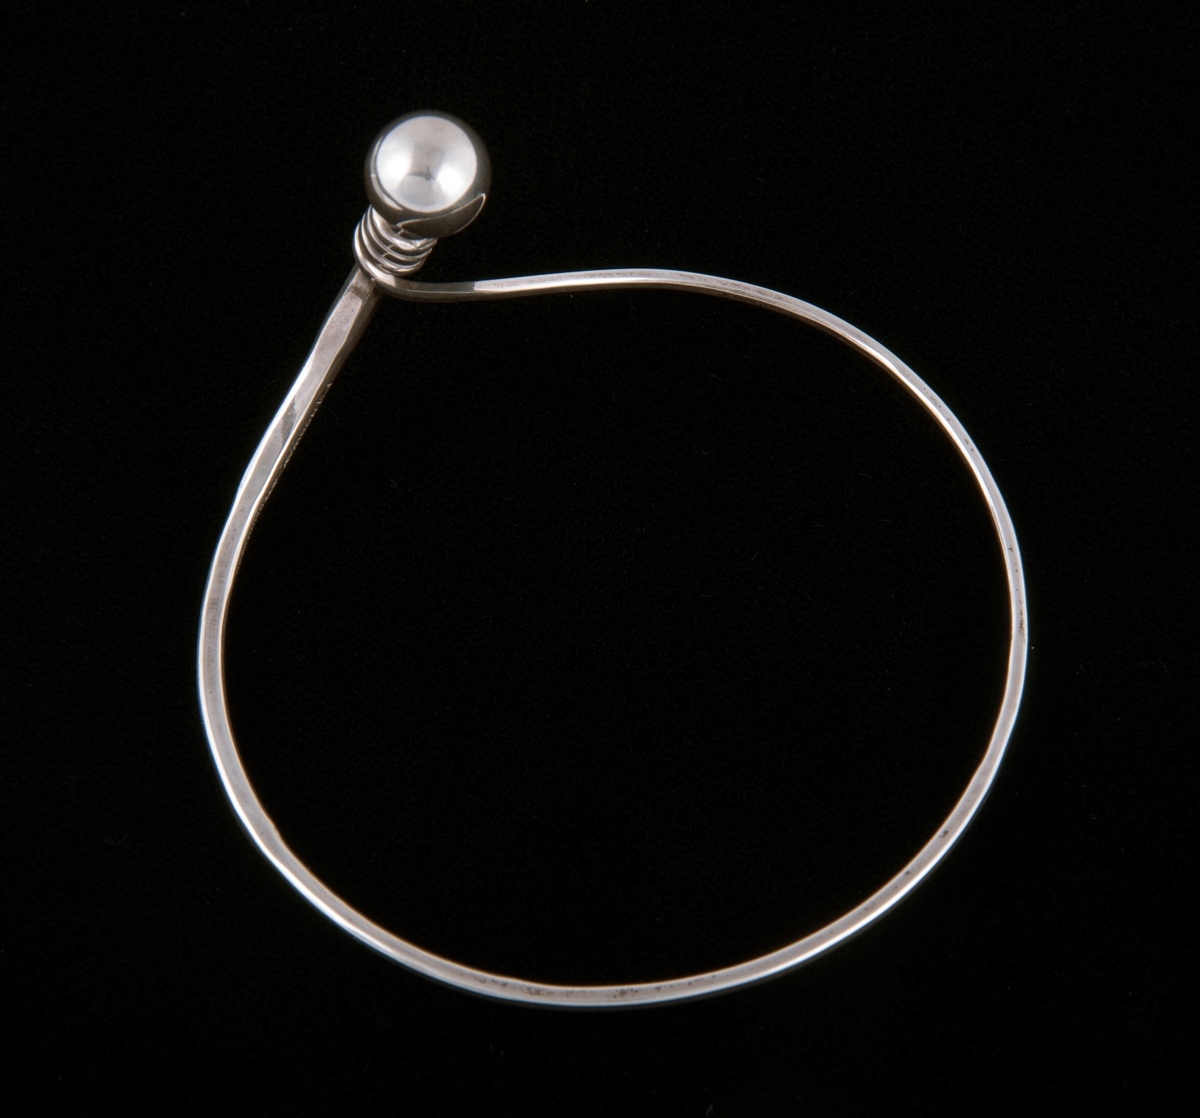 Består av en sølvtråd som avtar i bredde fra ende til annen. Endene forenes til en ring som markeres med en sølvkule. Kulen og endene er bøyd ut i vinkel fra armringen. 